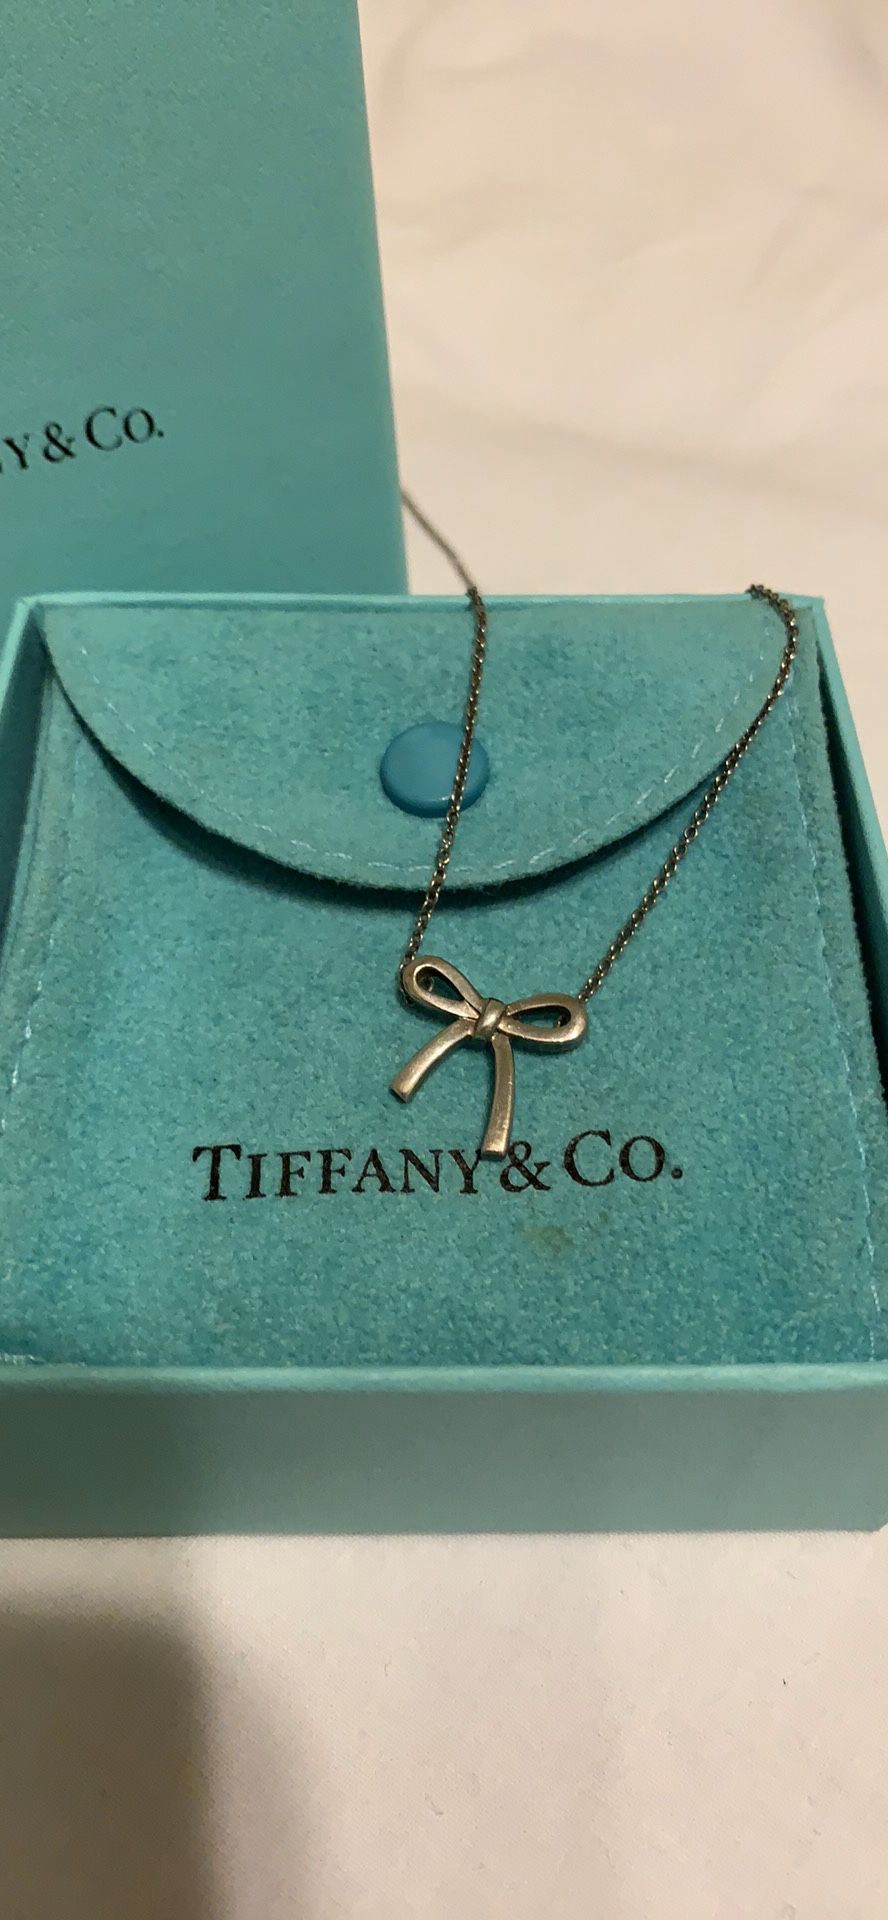 Tiffany & Co. Mini Bow Necklace